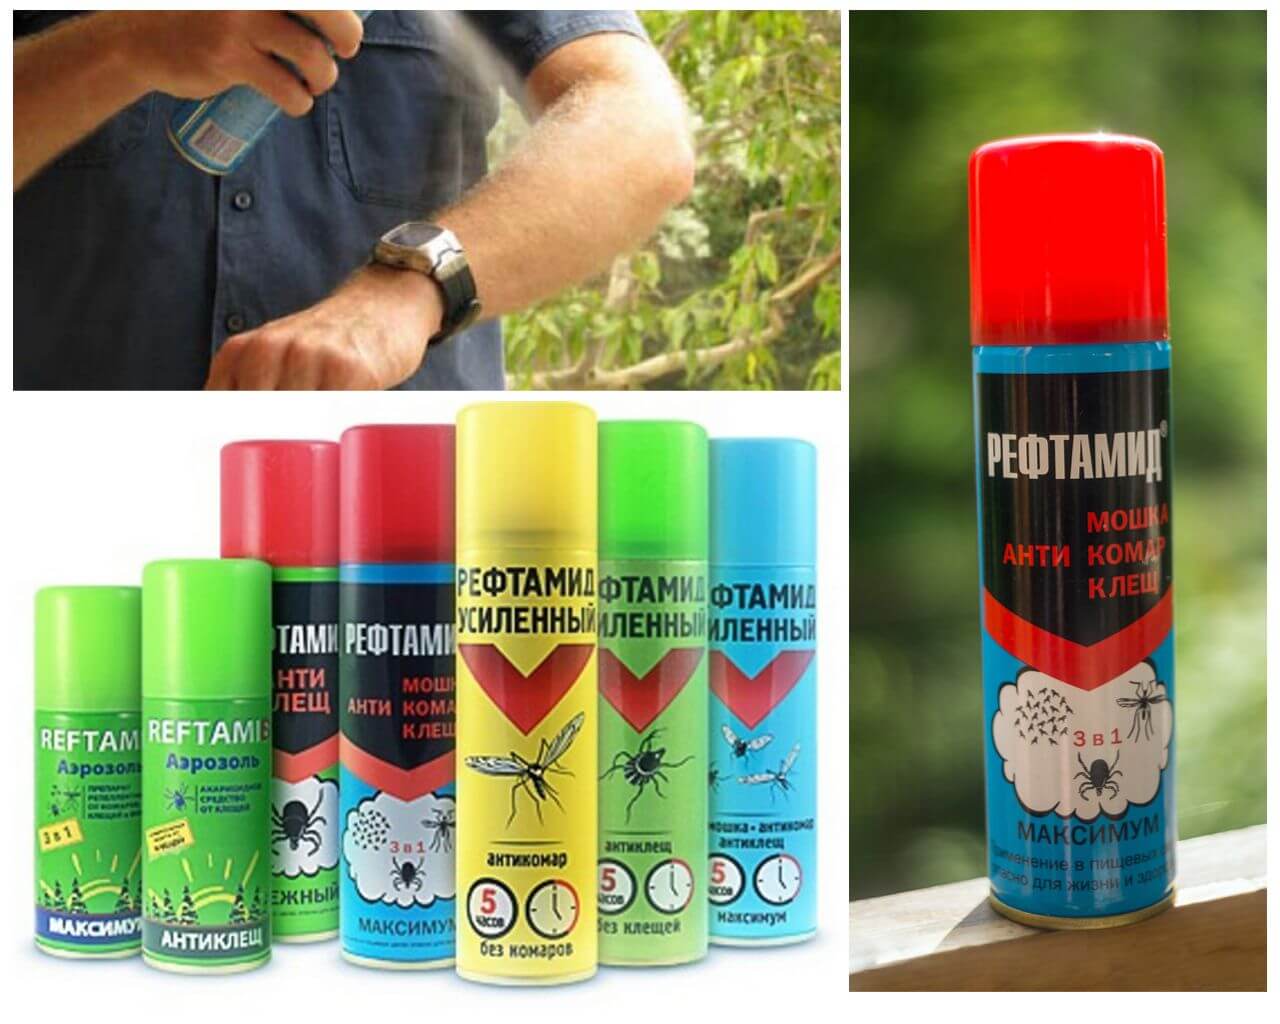 Spray de reftamida de mosquitos